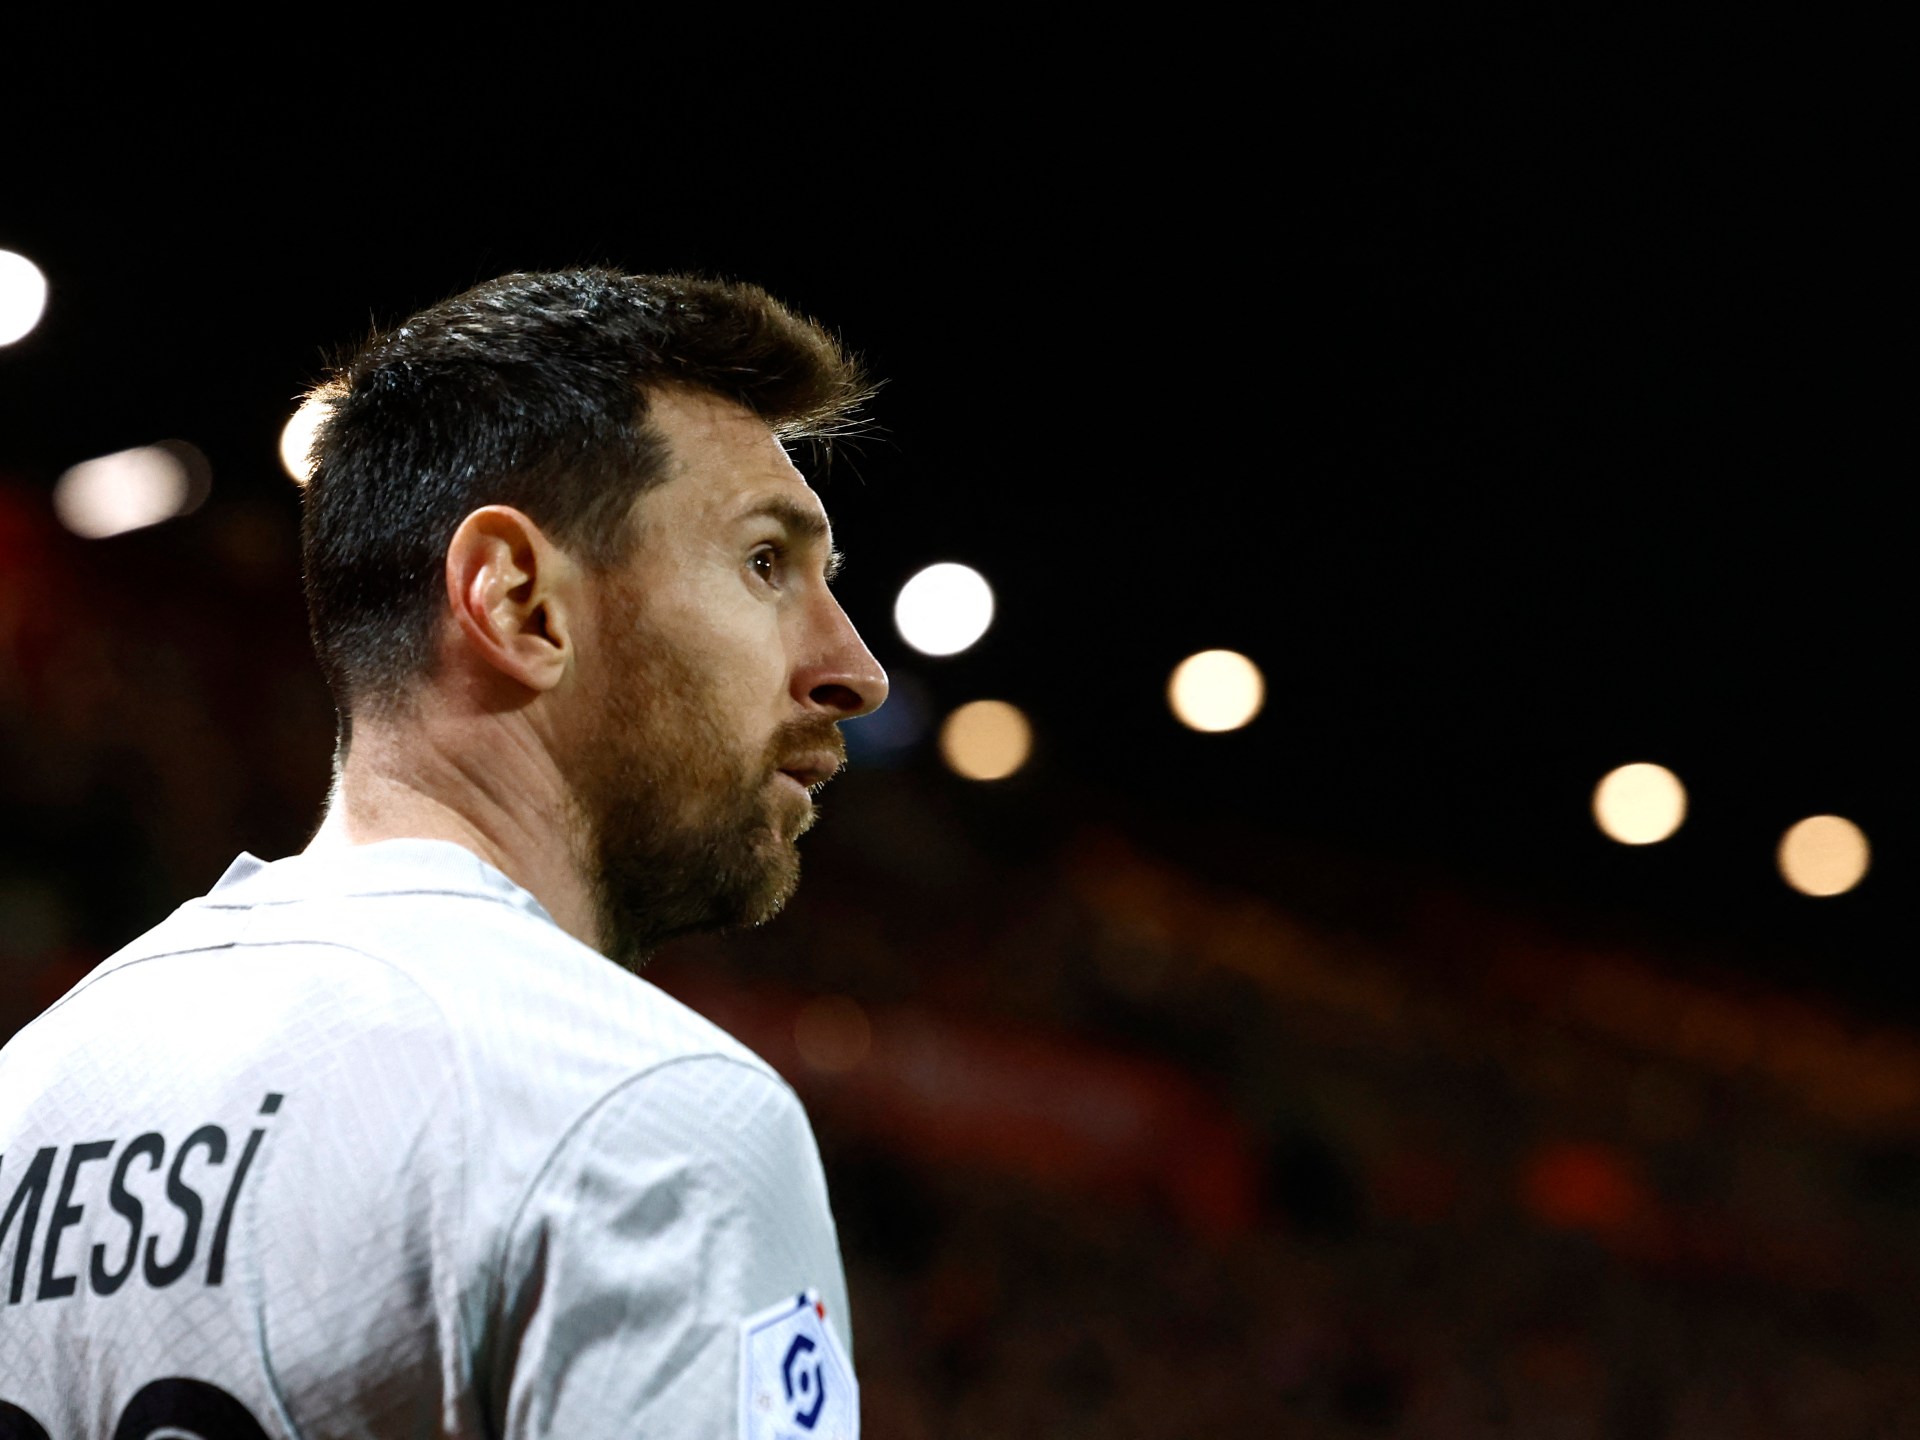 Messi akan menghadapi tindakan disipliner di PSG atas perjalanan ke Arab Saudi |  Berita Sepak Bola